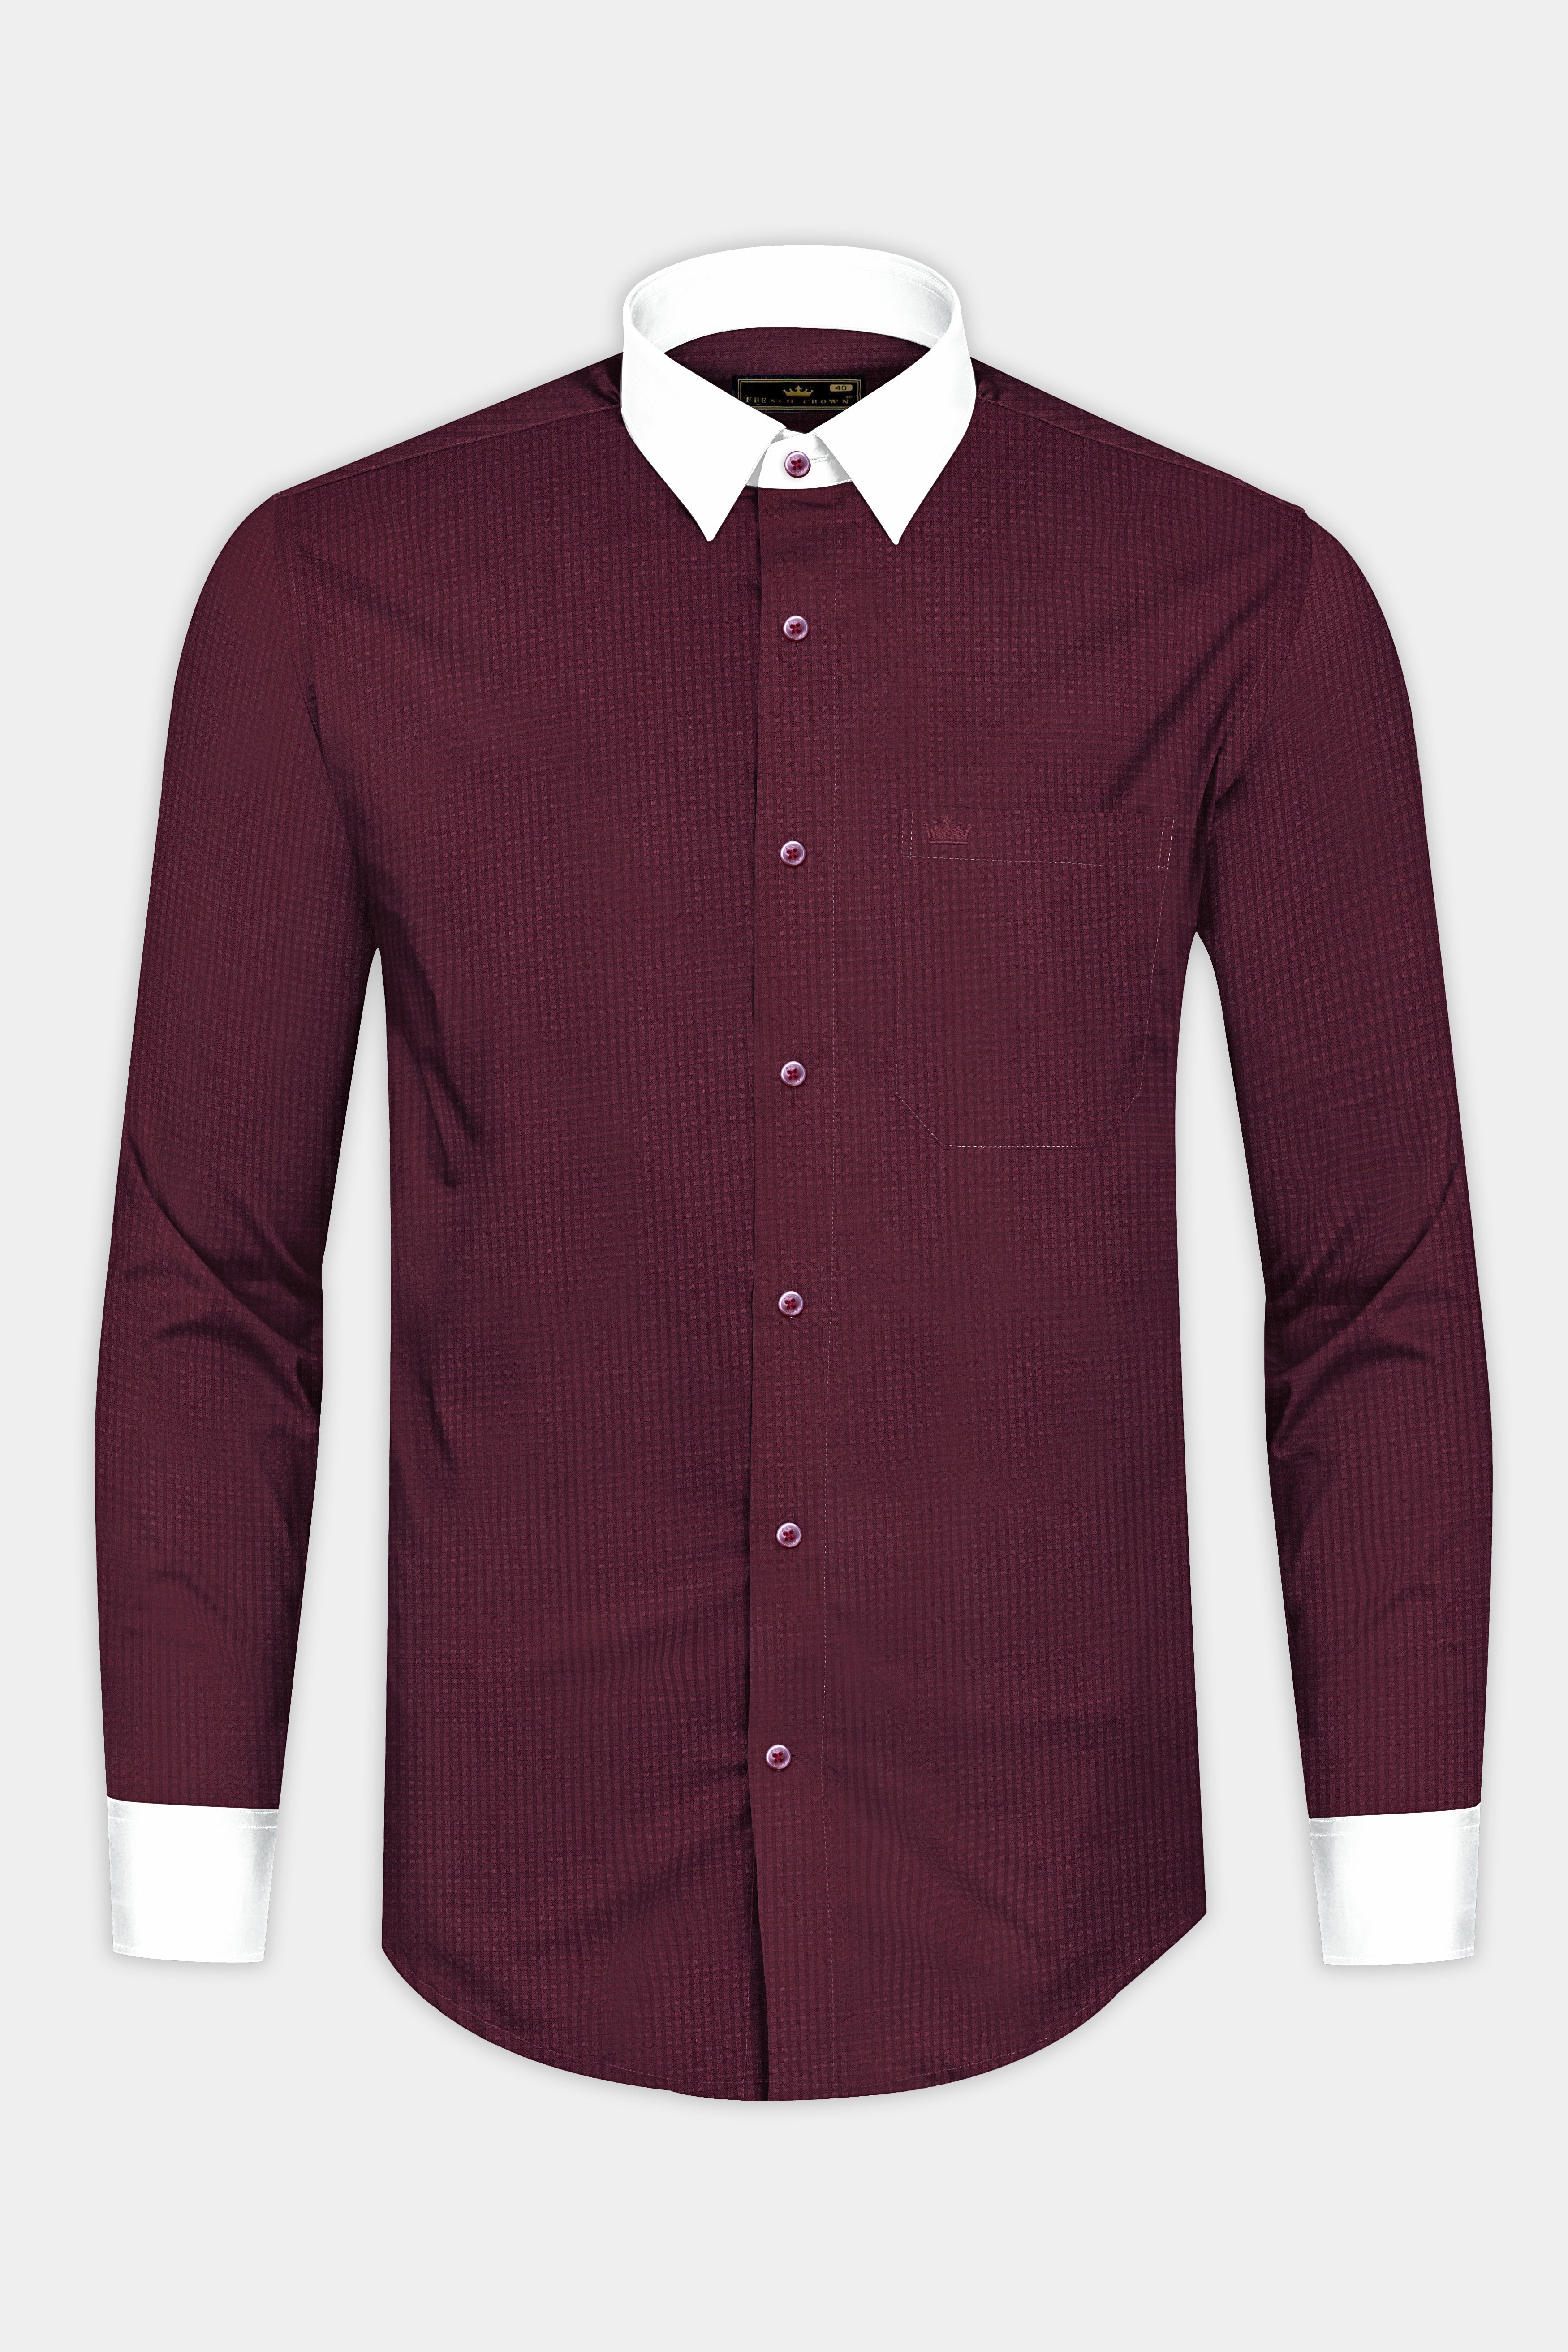 Wine Berry Red Dobby Textured Premium Cotton Shirt